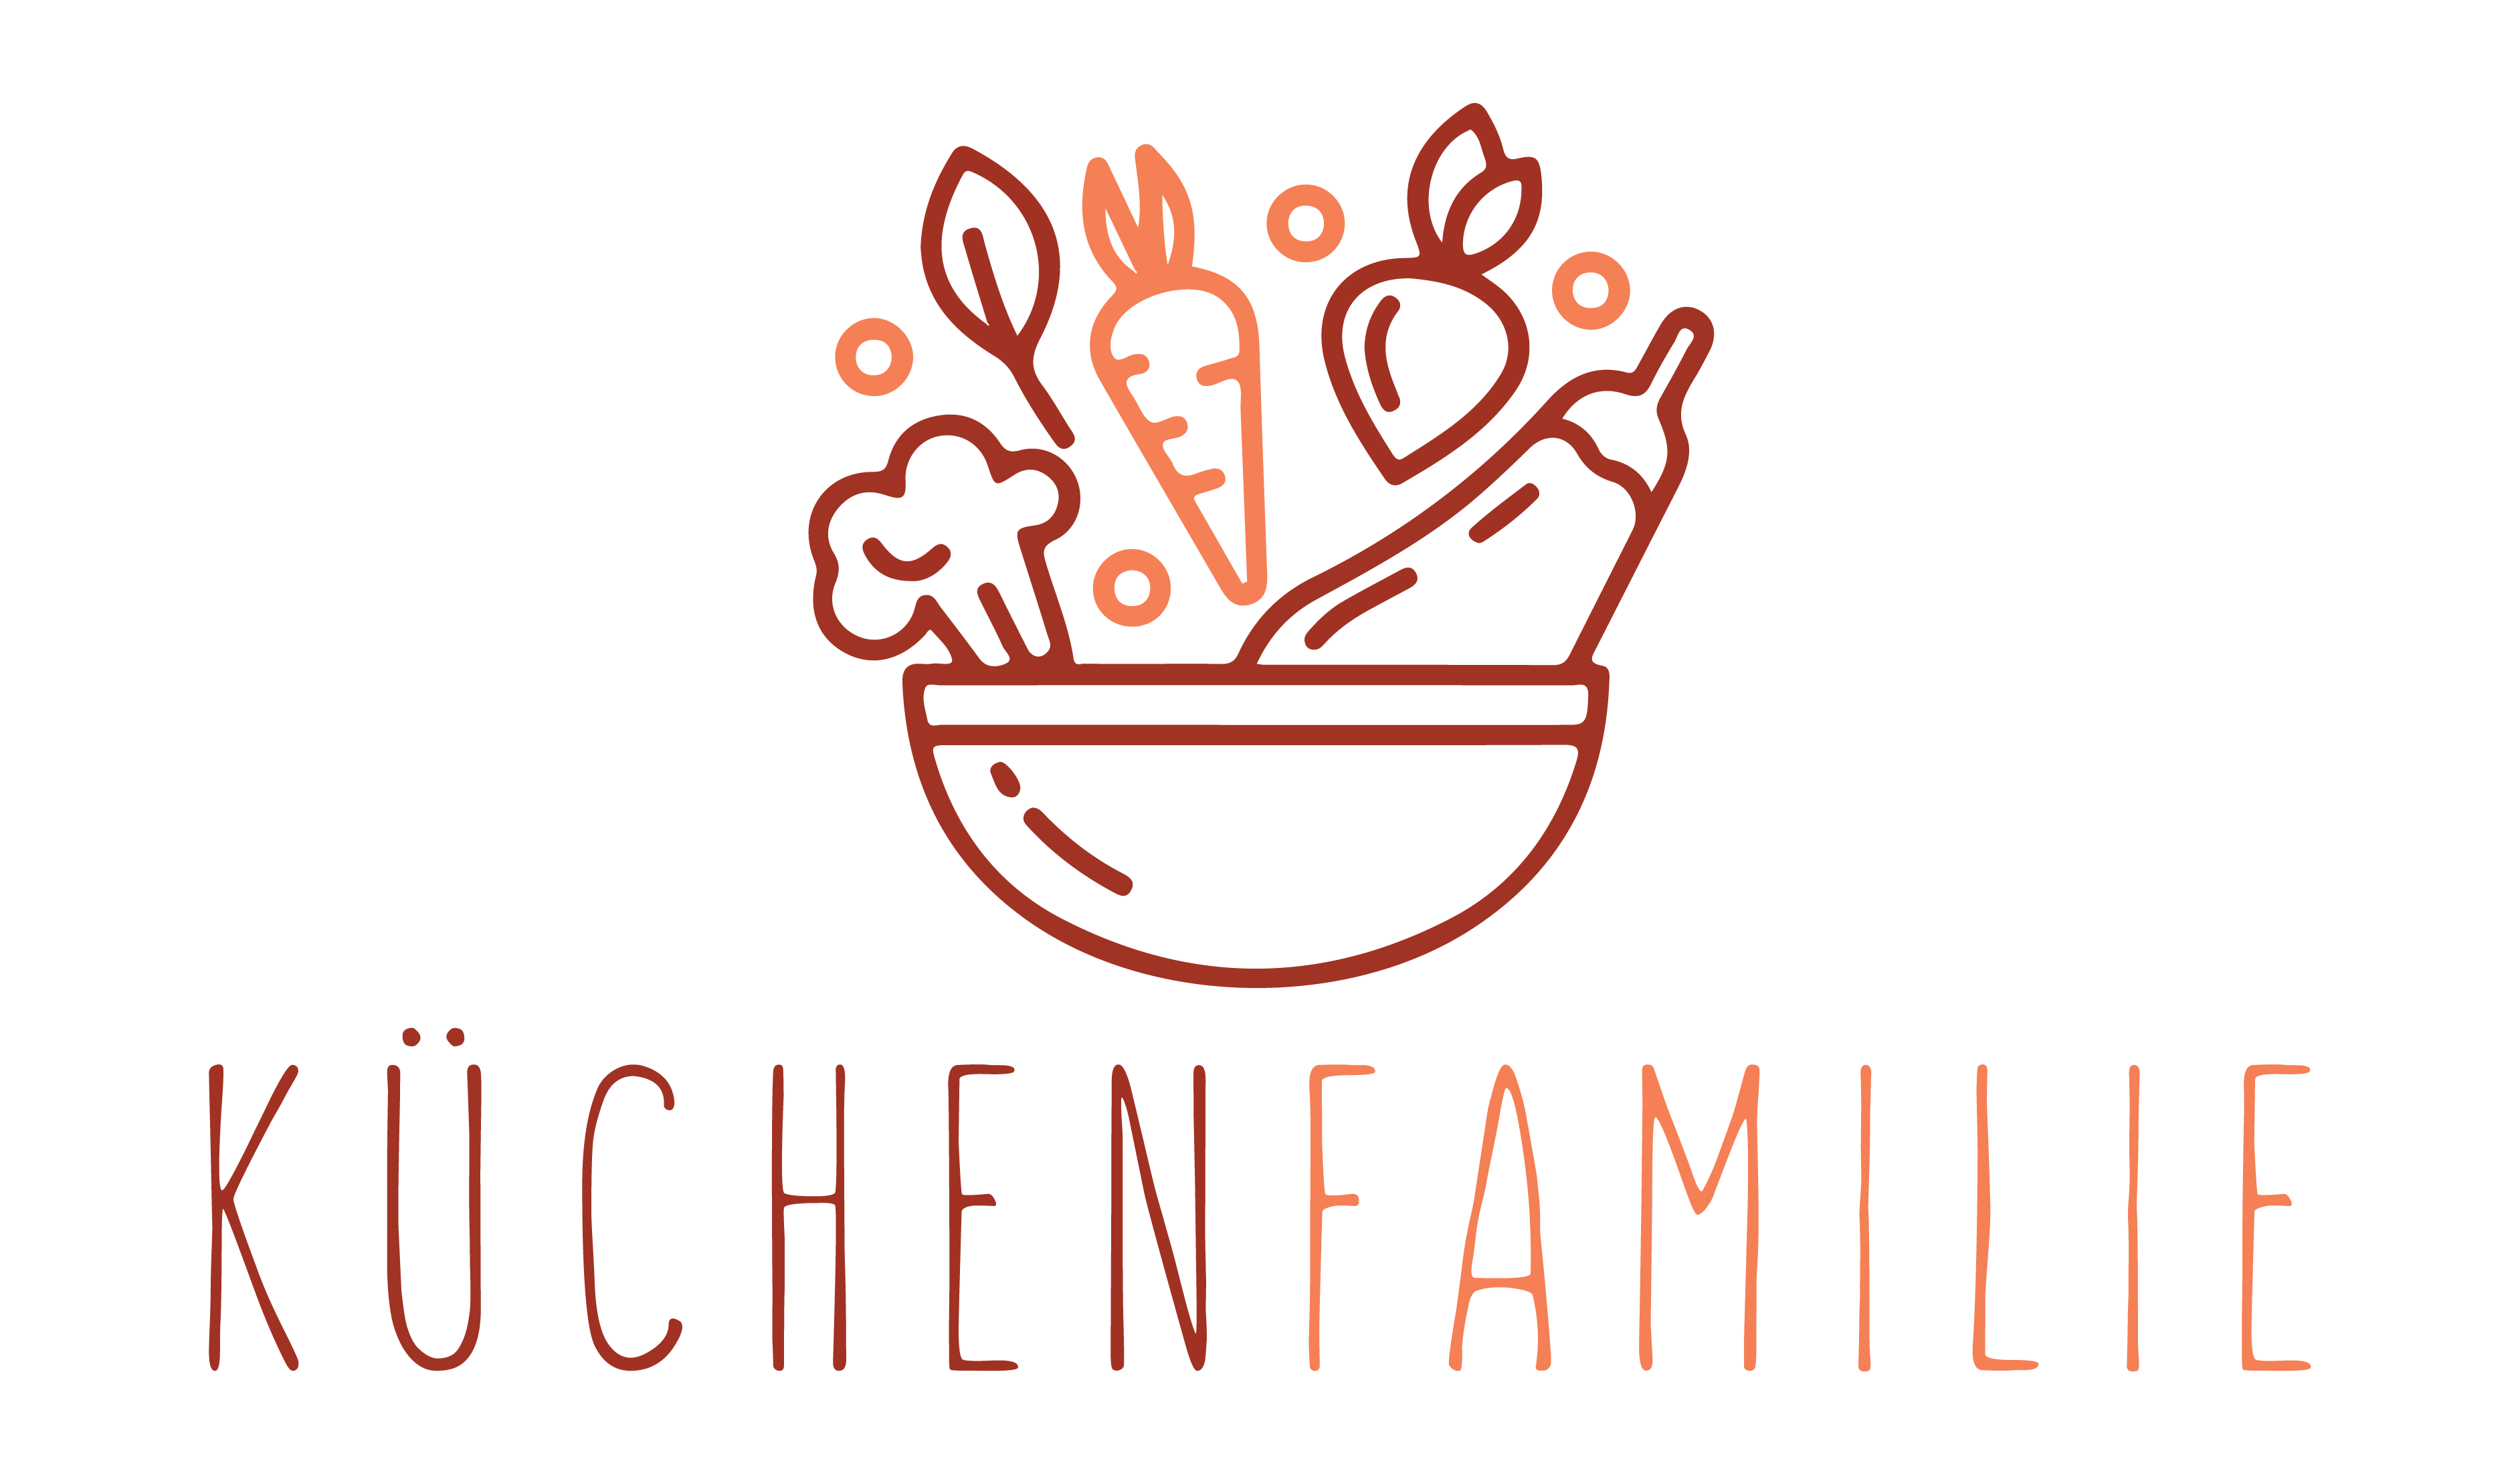 Logo Küchenfamilie